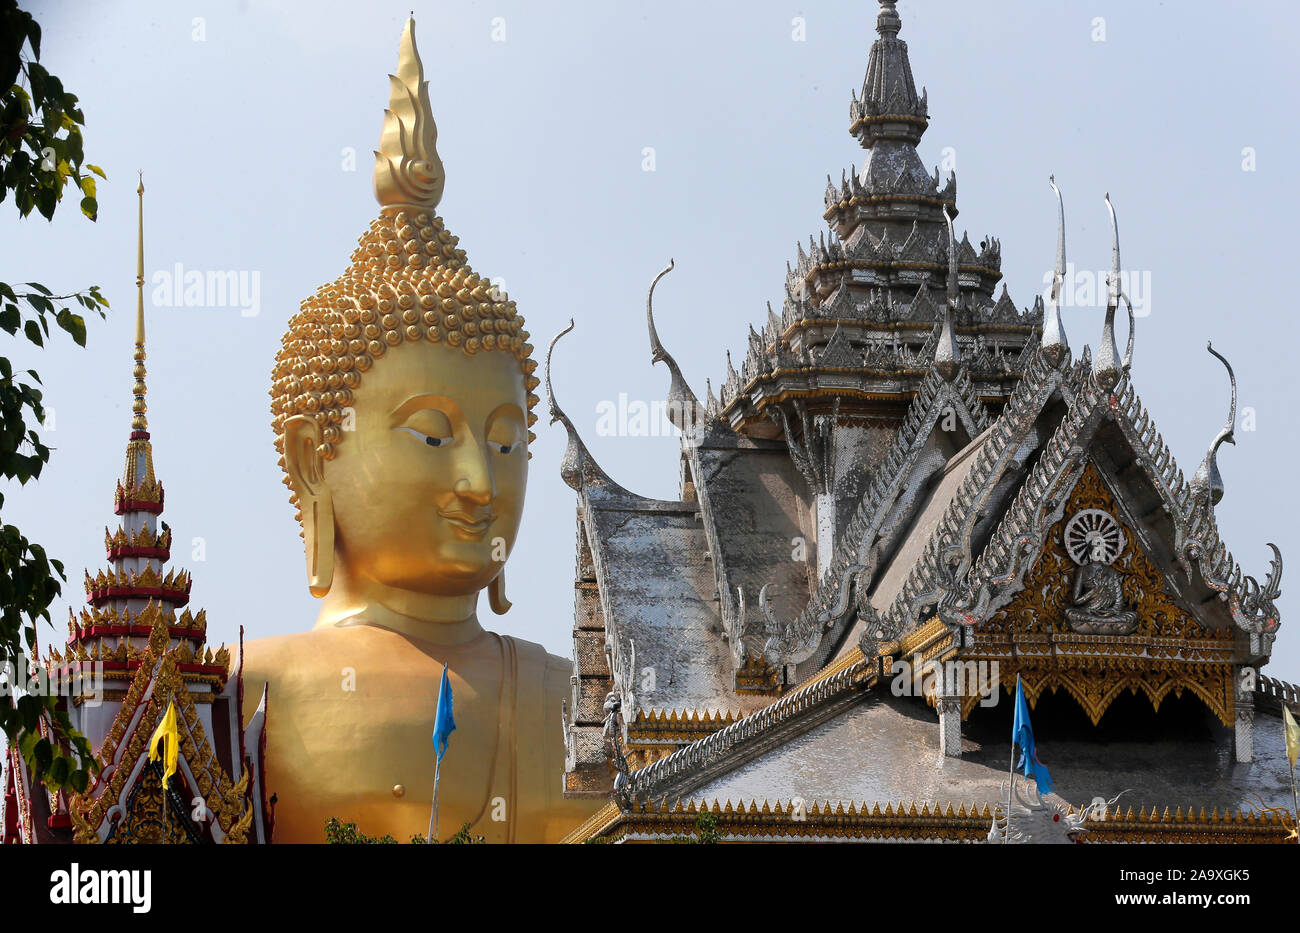 Ang Thong, Thailandia. Xviii Nov, 2019. Vista di una gigantesca statua del Buddha in un tempio in Thailandia del Ang Thong provincia. Credito: SOPA Immagini limitata/Alamy Live News Foto Stock